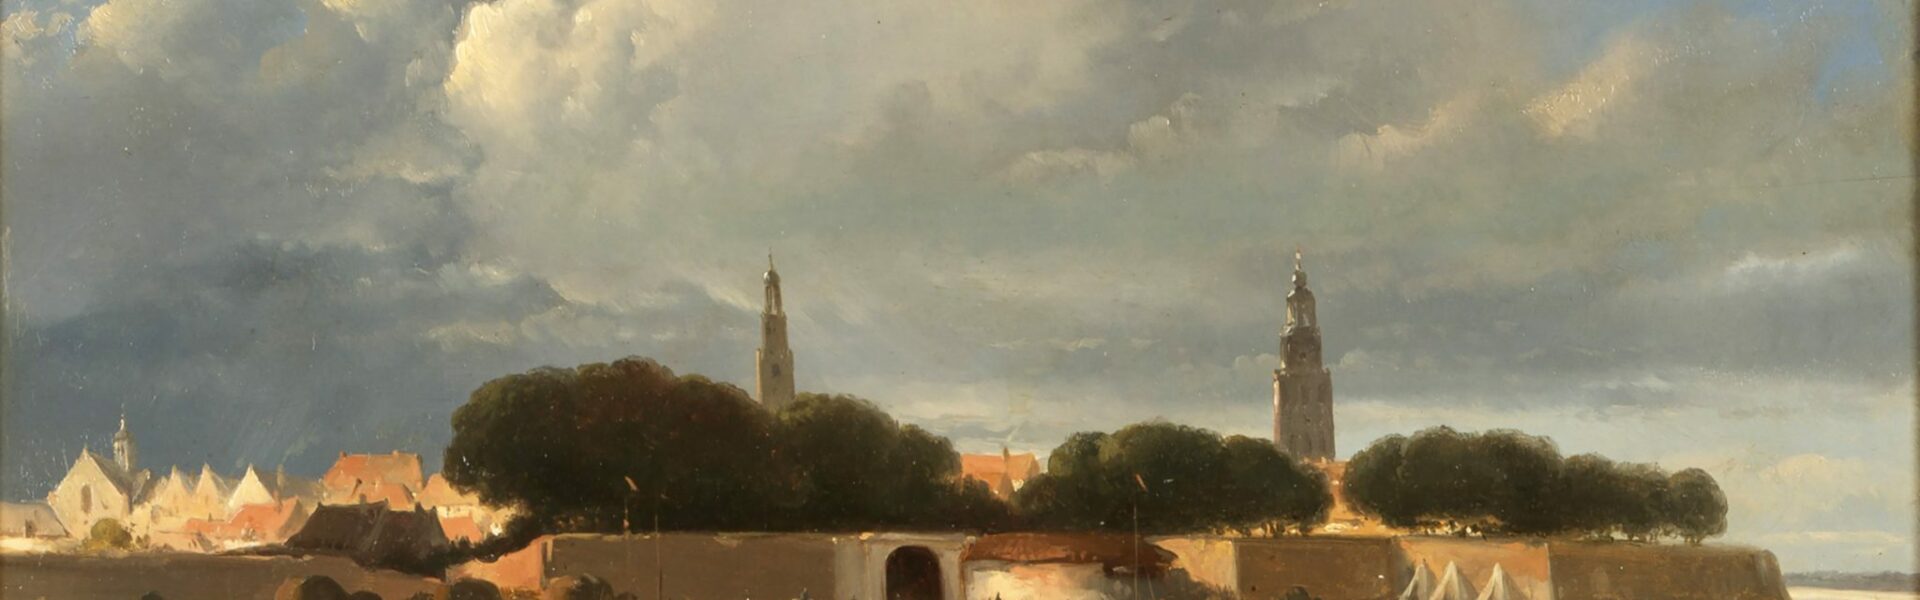 Wouterus Verschuur - Gezicht op Zutphen - ca 1850 - olieverf op doek - collectie Stedelijk Museum Zutphen